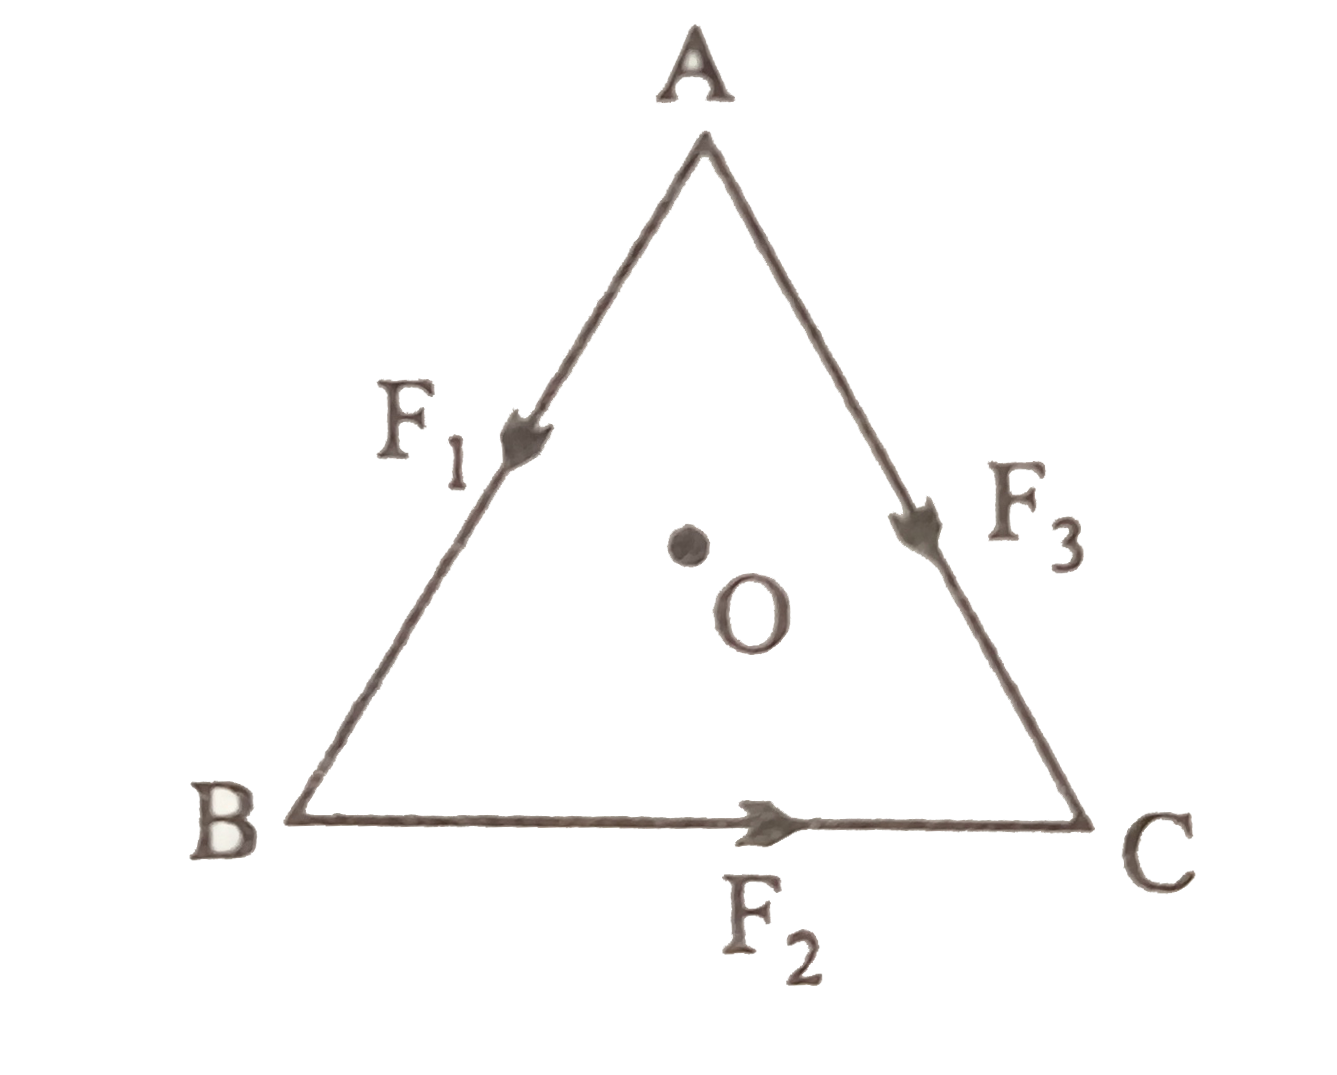 एक समबाहु त्रिभुज ABC का केंद्र  O है । F(1),F(2)   और F(3)  क्रमशः AB, BC  व AC के अनुदिश कार्यरत बल हैं । F(3) का मान क्या होगा जबकि O के परितः कुल बल - आघूर्ण शून्य है ।